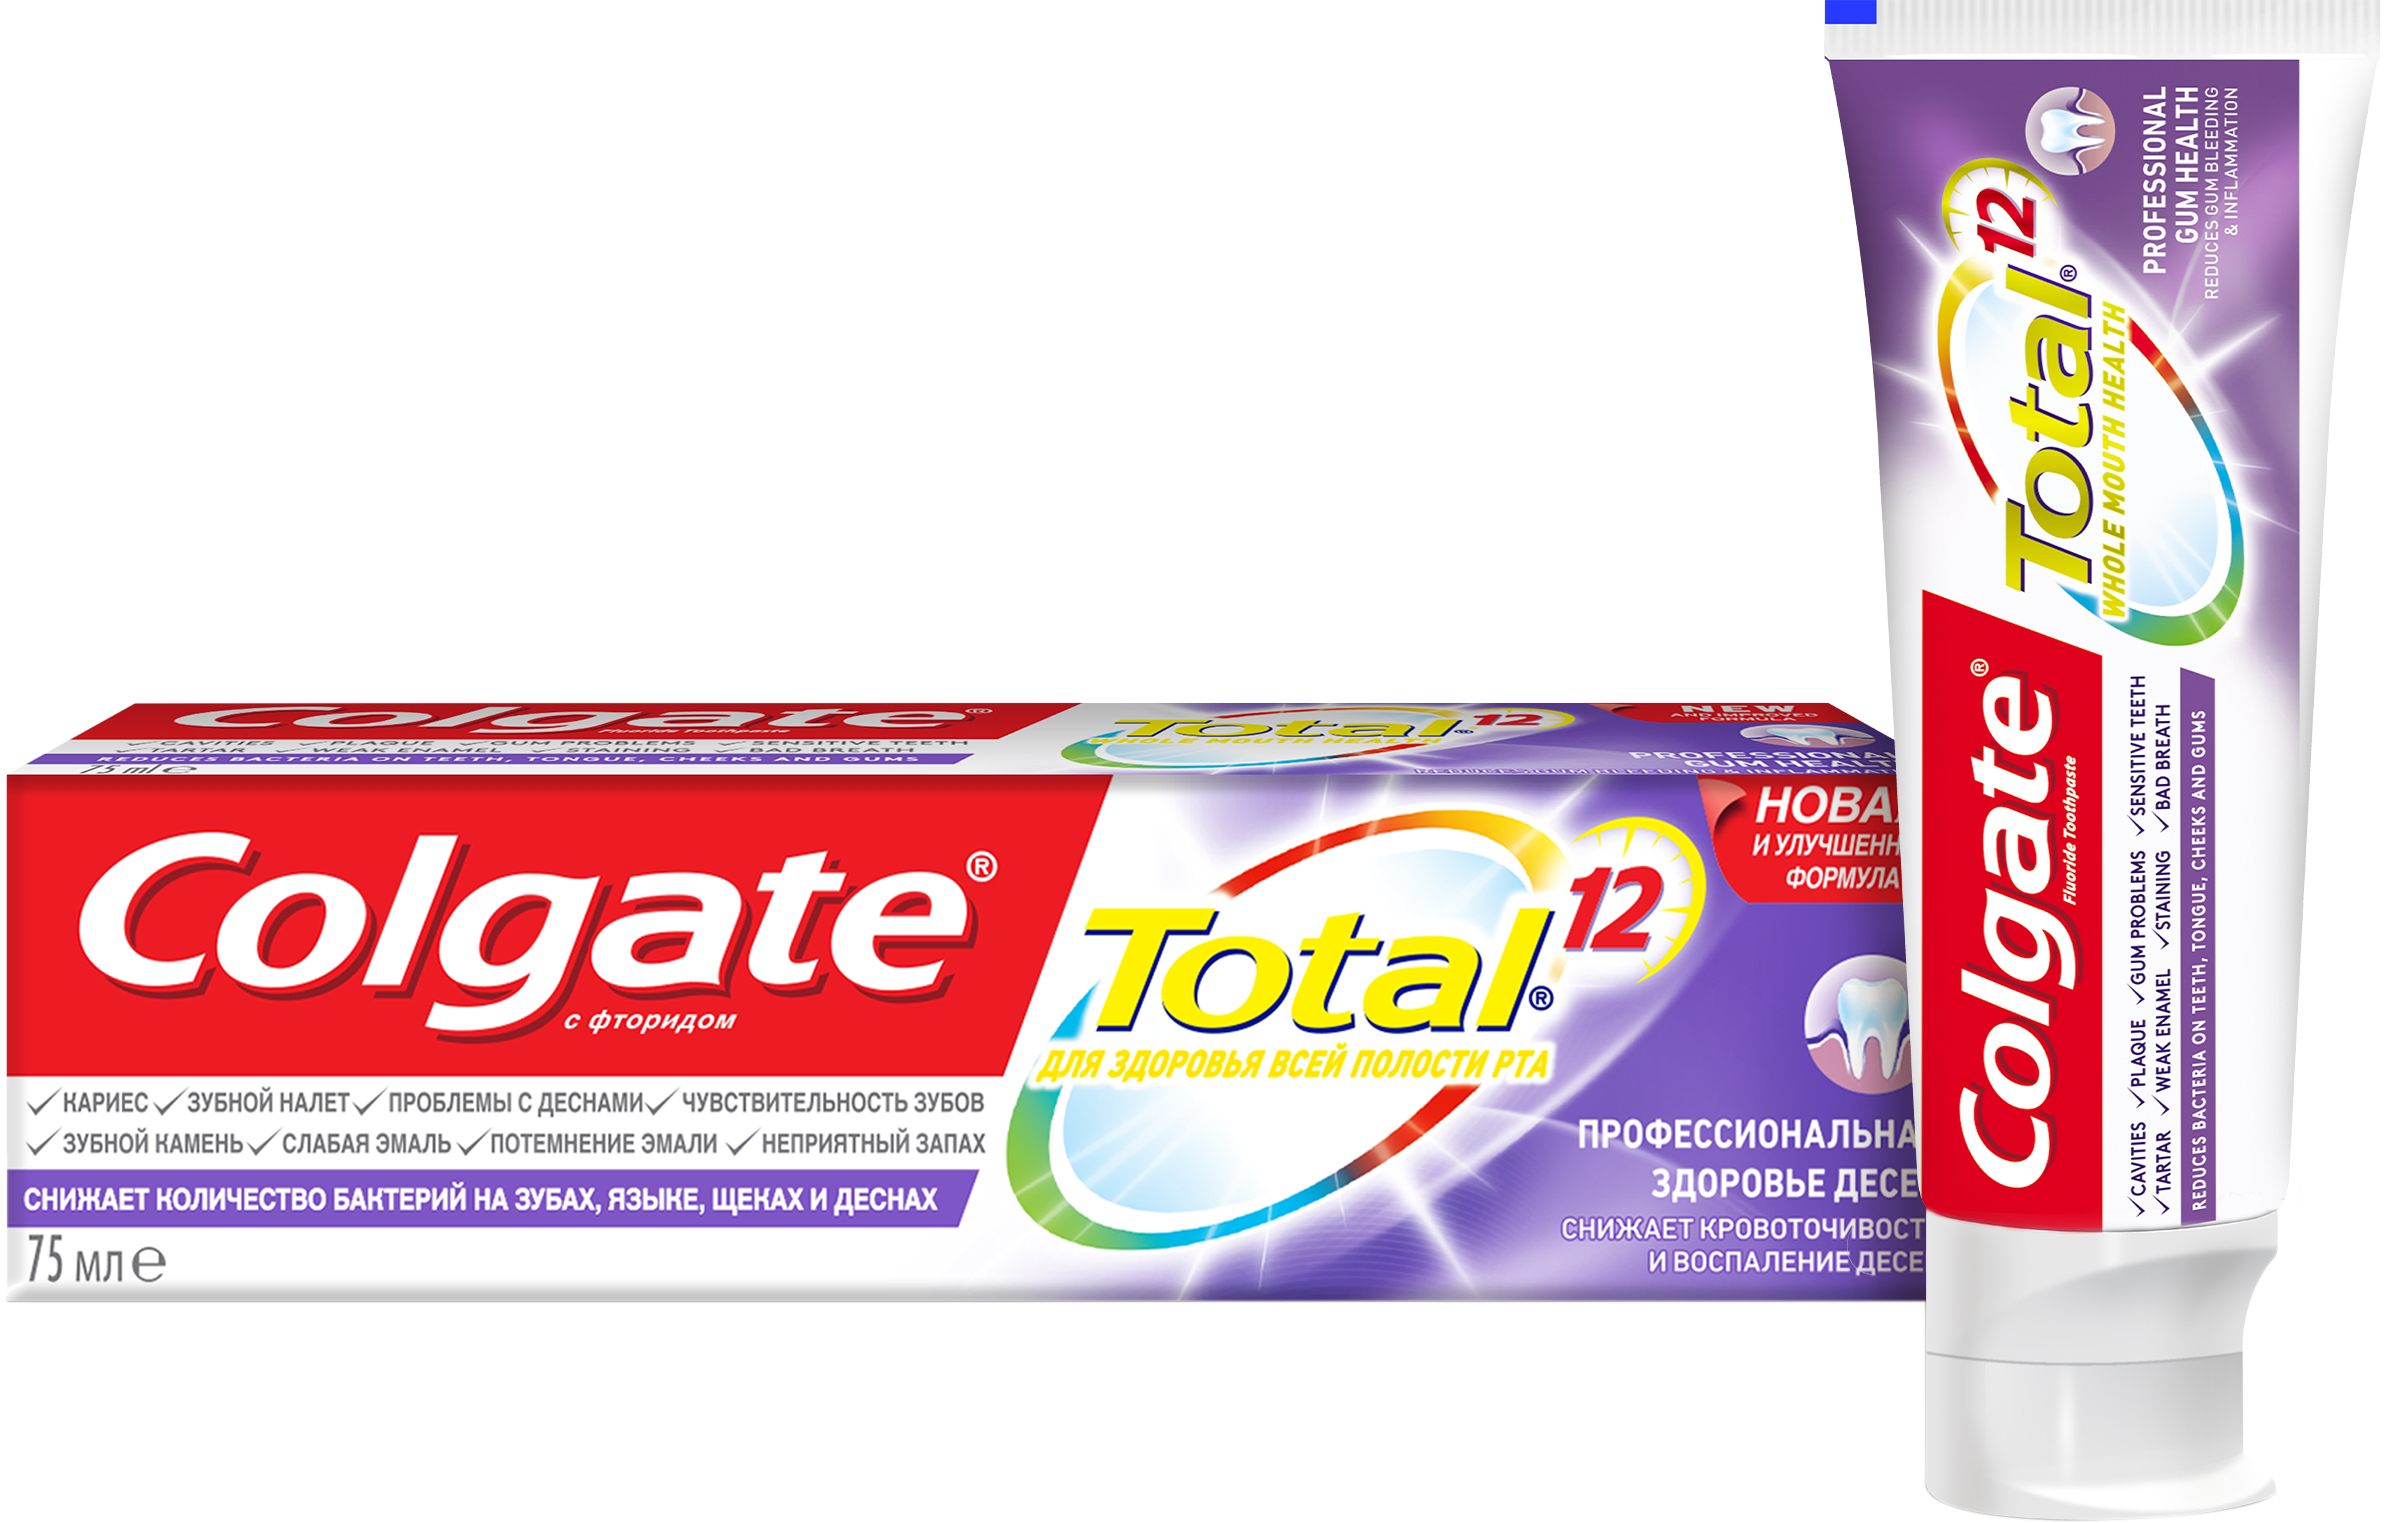 Colgate Total 12 зубная паста Про Здоровье десен 75мл. - Добрая аптека